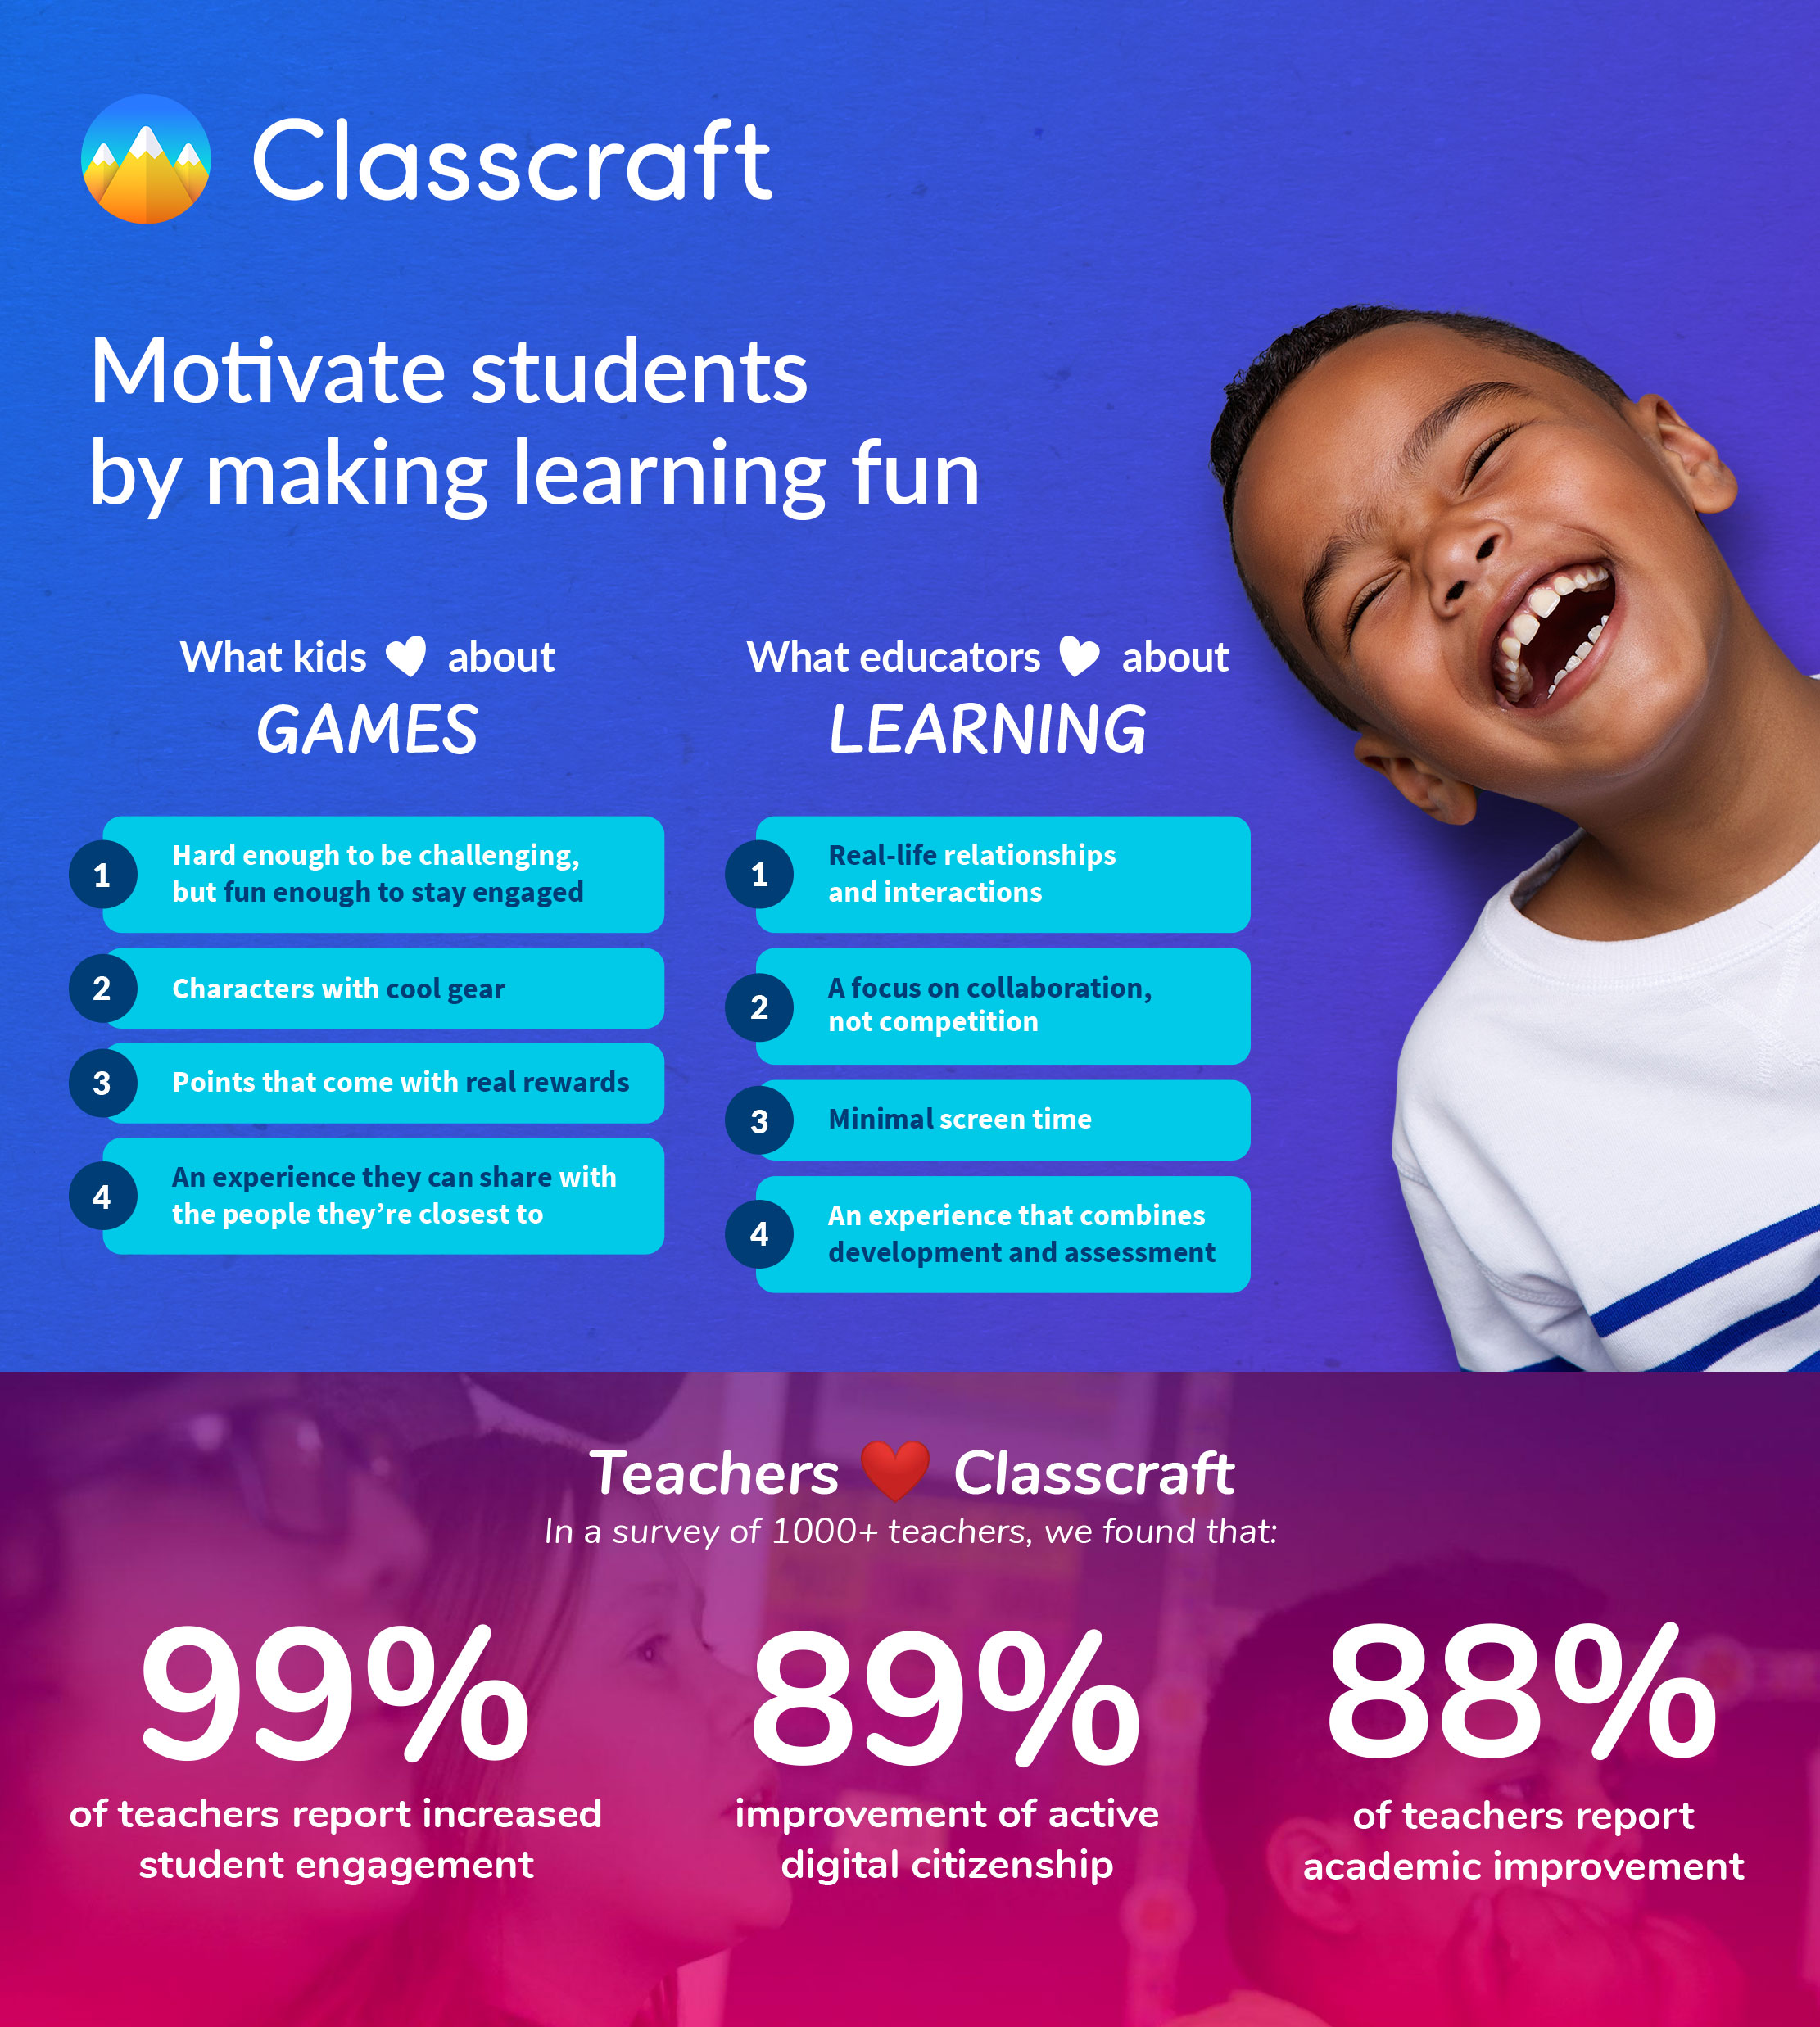 Grâce à ce financement, Classcraft pourra approfondir ses capacités de motivation des élèves grâce à la culture et la psychologie des jeux.